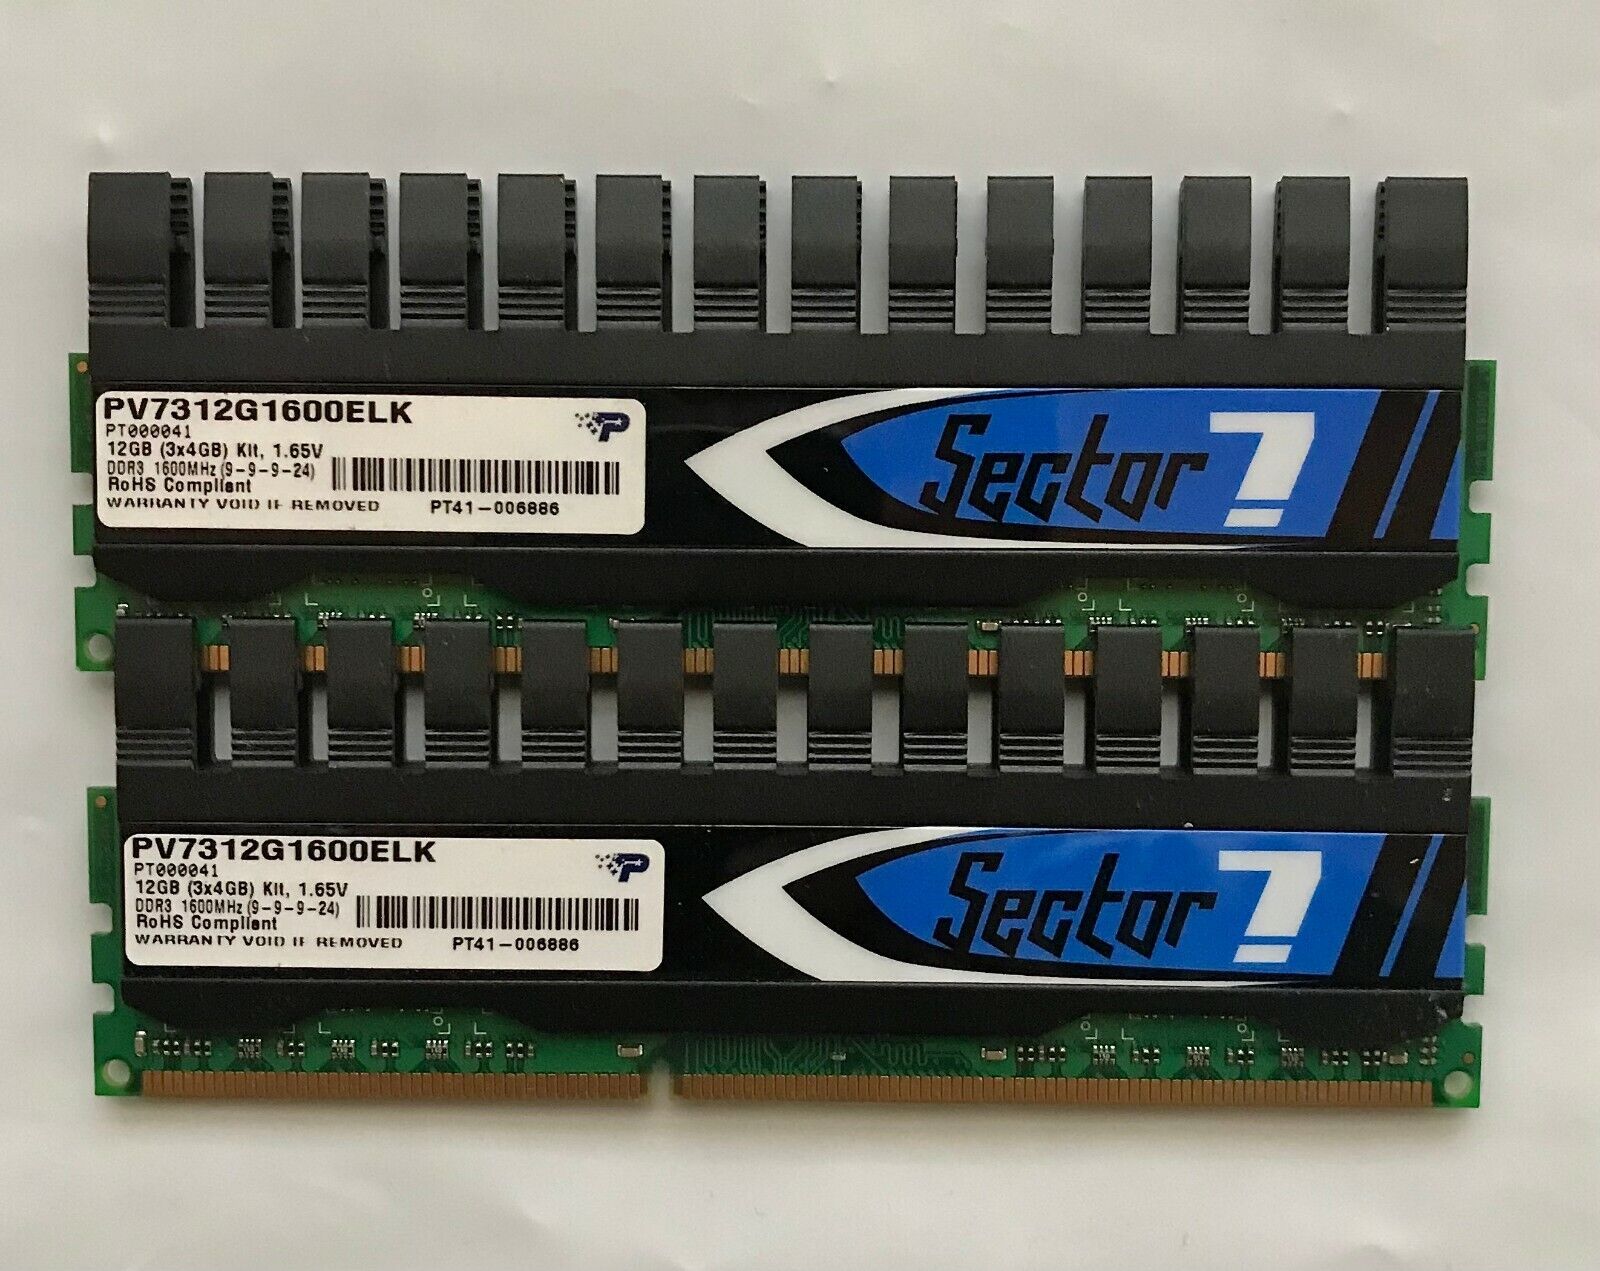 Patriot Viper II Sector 7 8GB RAM (2X4GB) PC3-12800 DDR3-1600 PV7312G1600ELK 